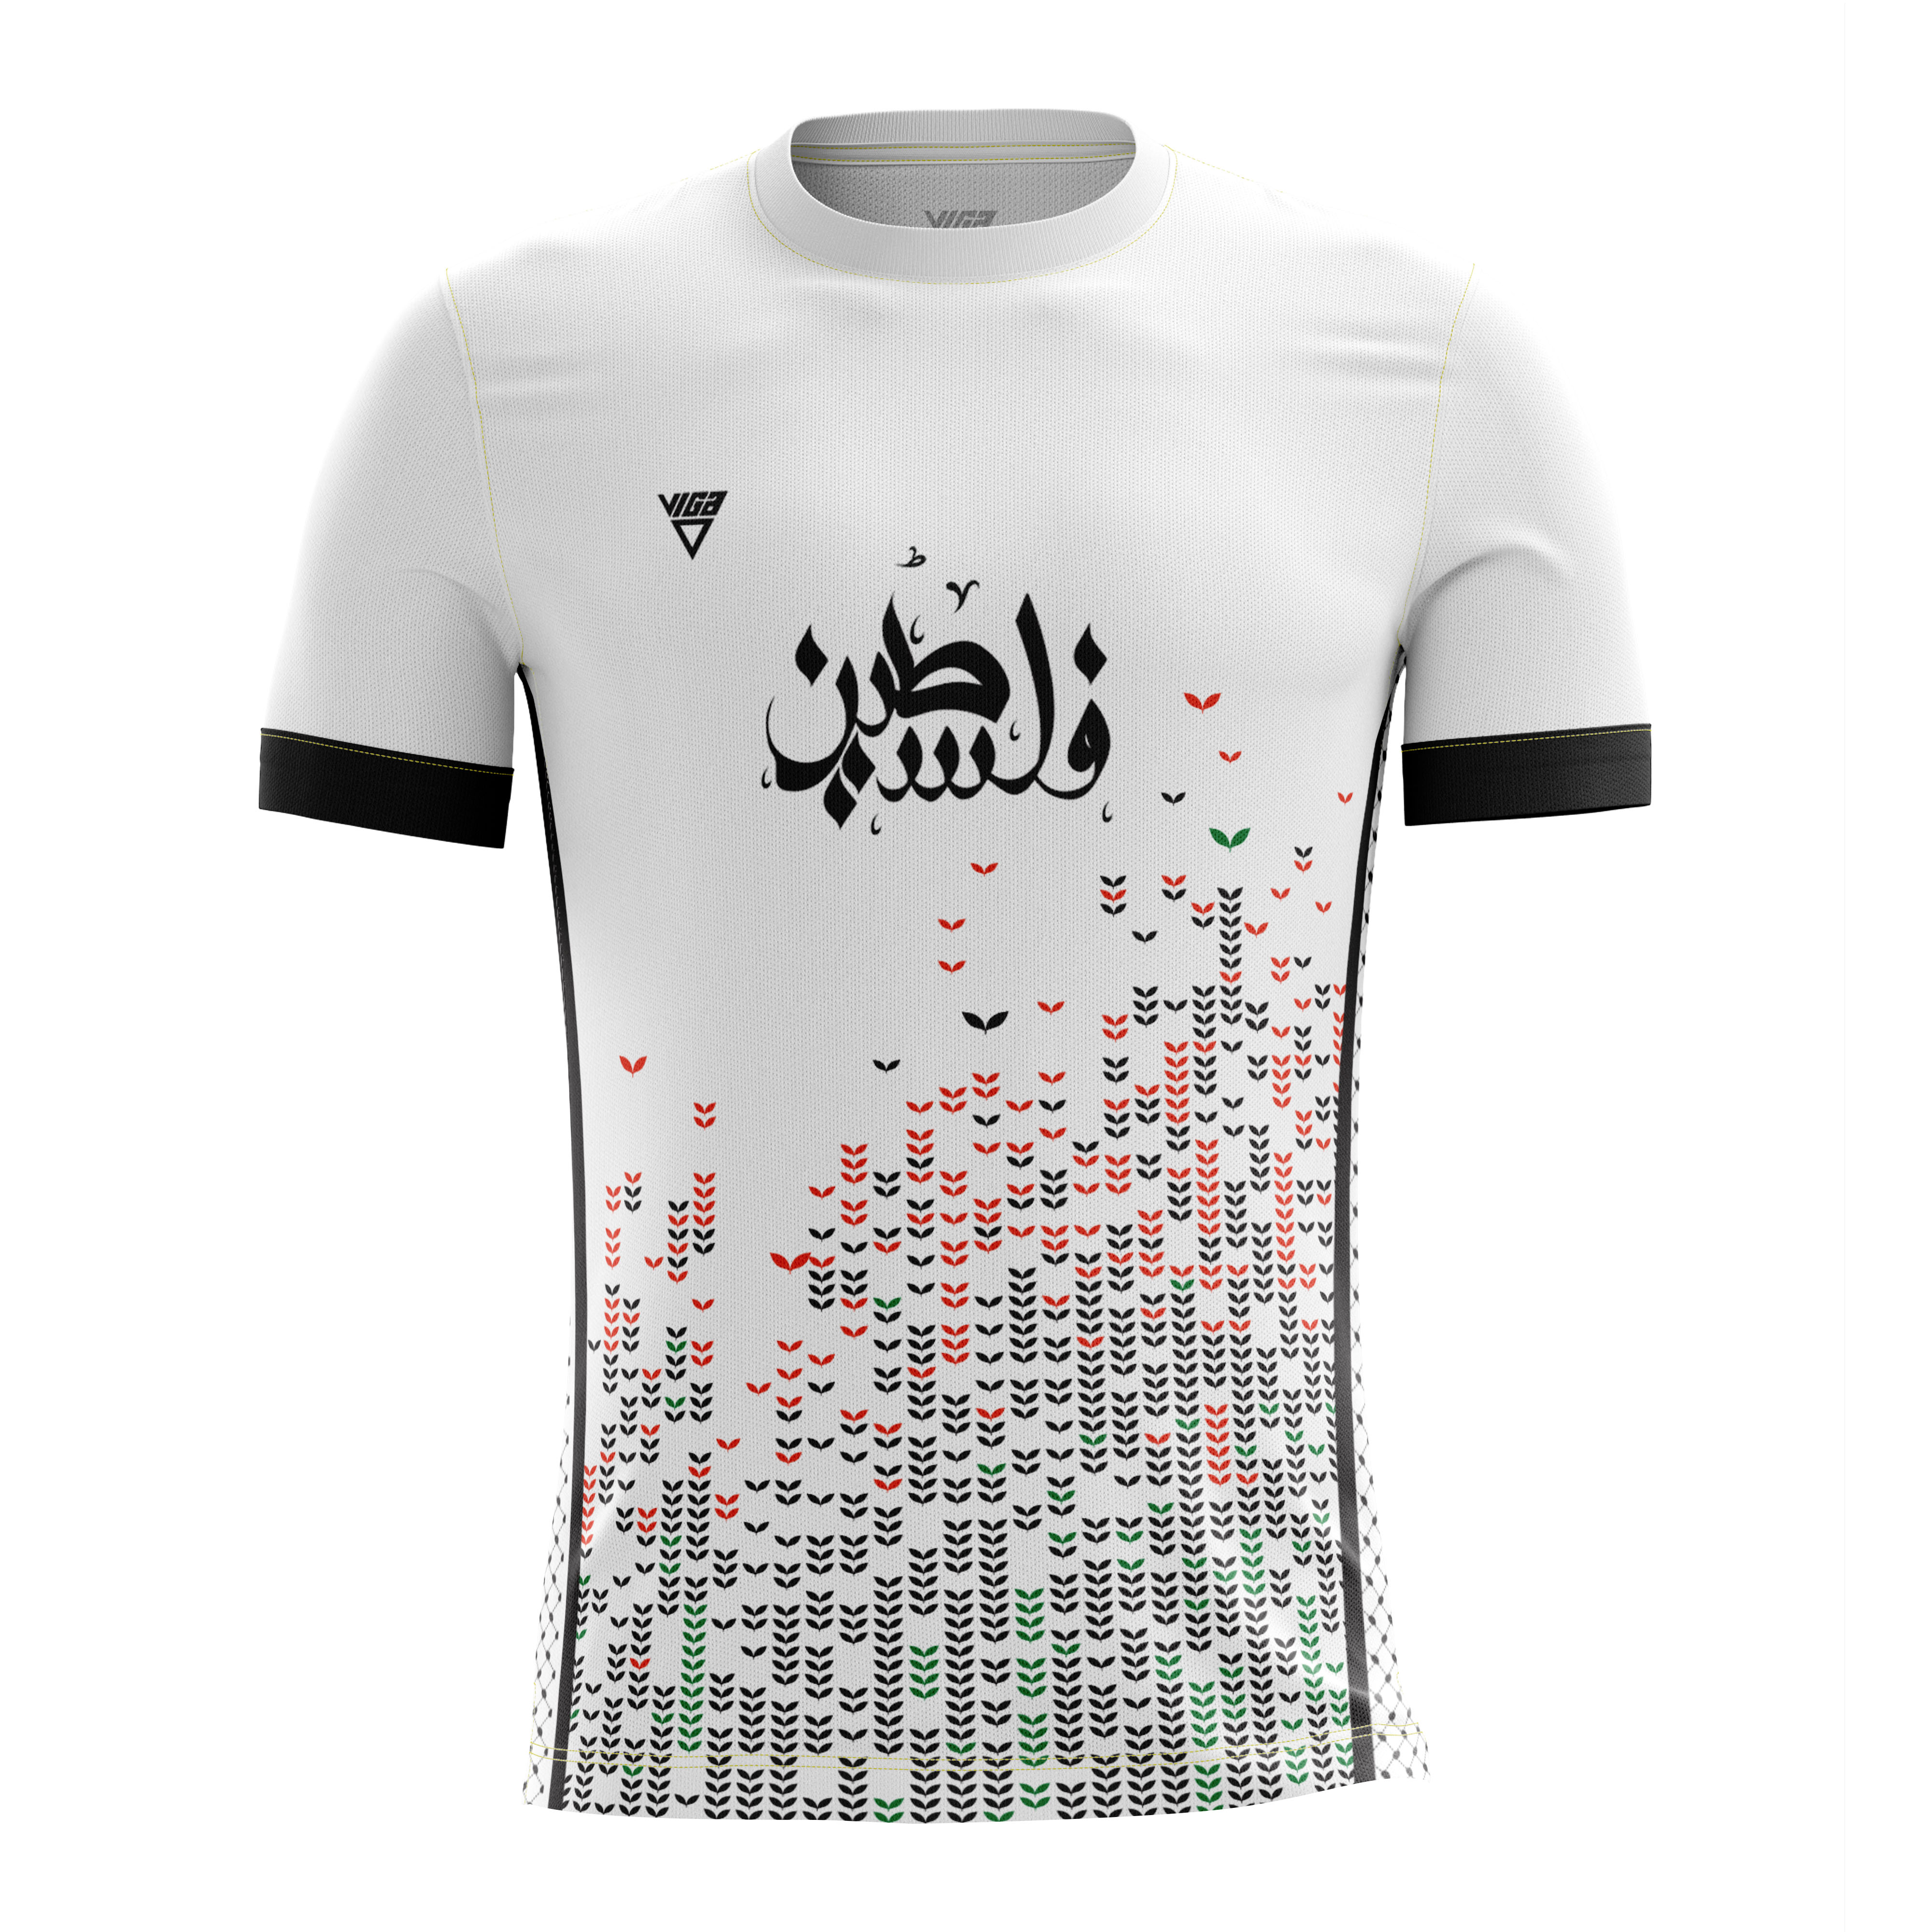 Palestine White Soccer T-shirt